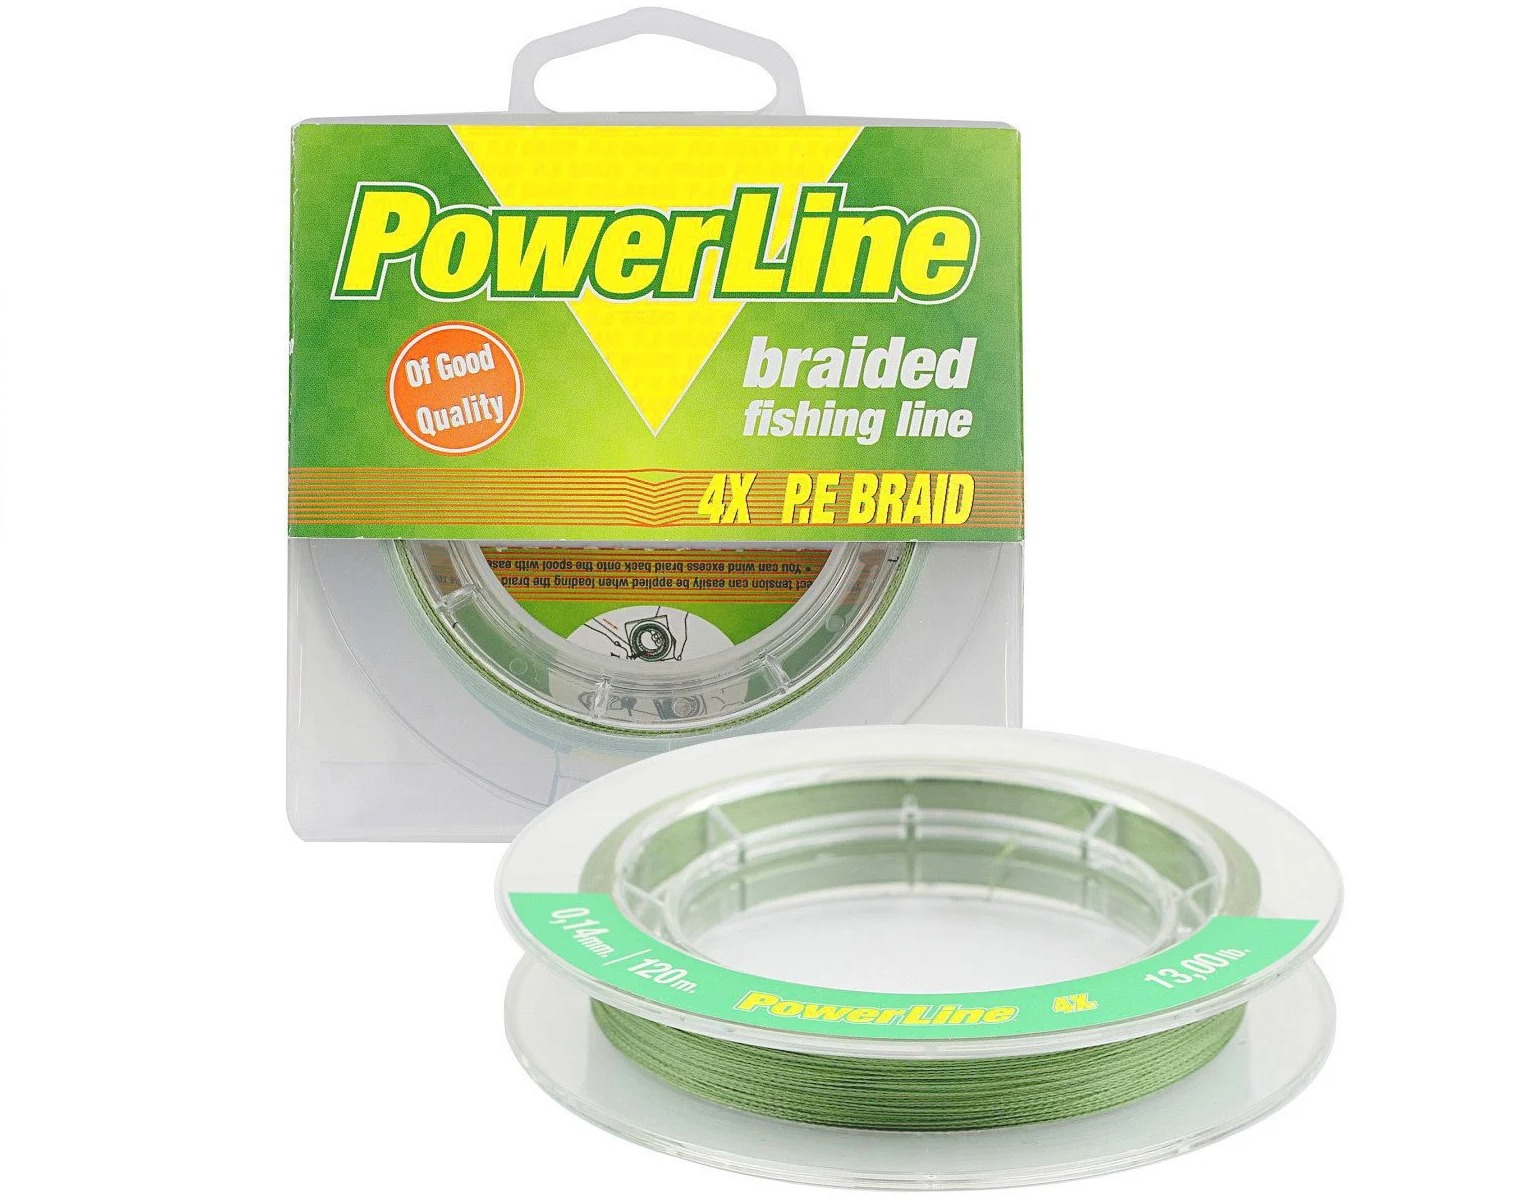 Power Lıne Classic Braid 4x 120 mt Örgü İp (Yeşil)